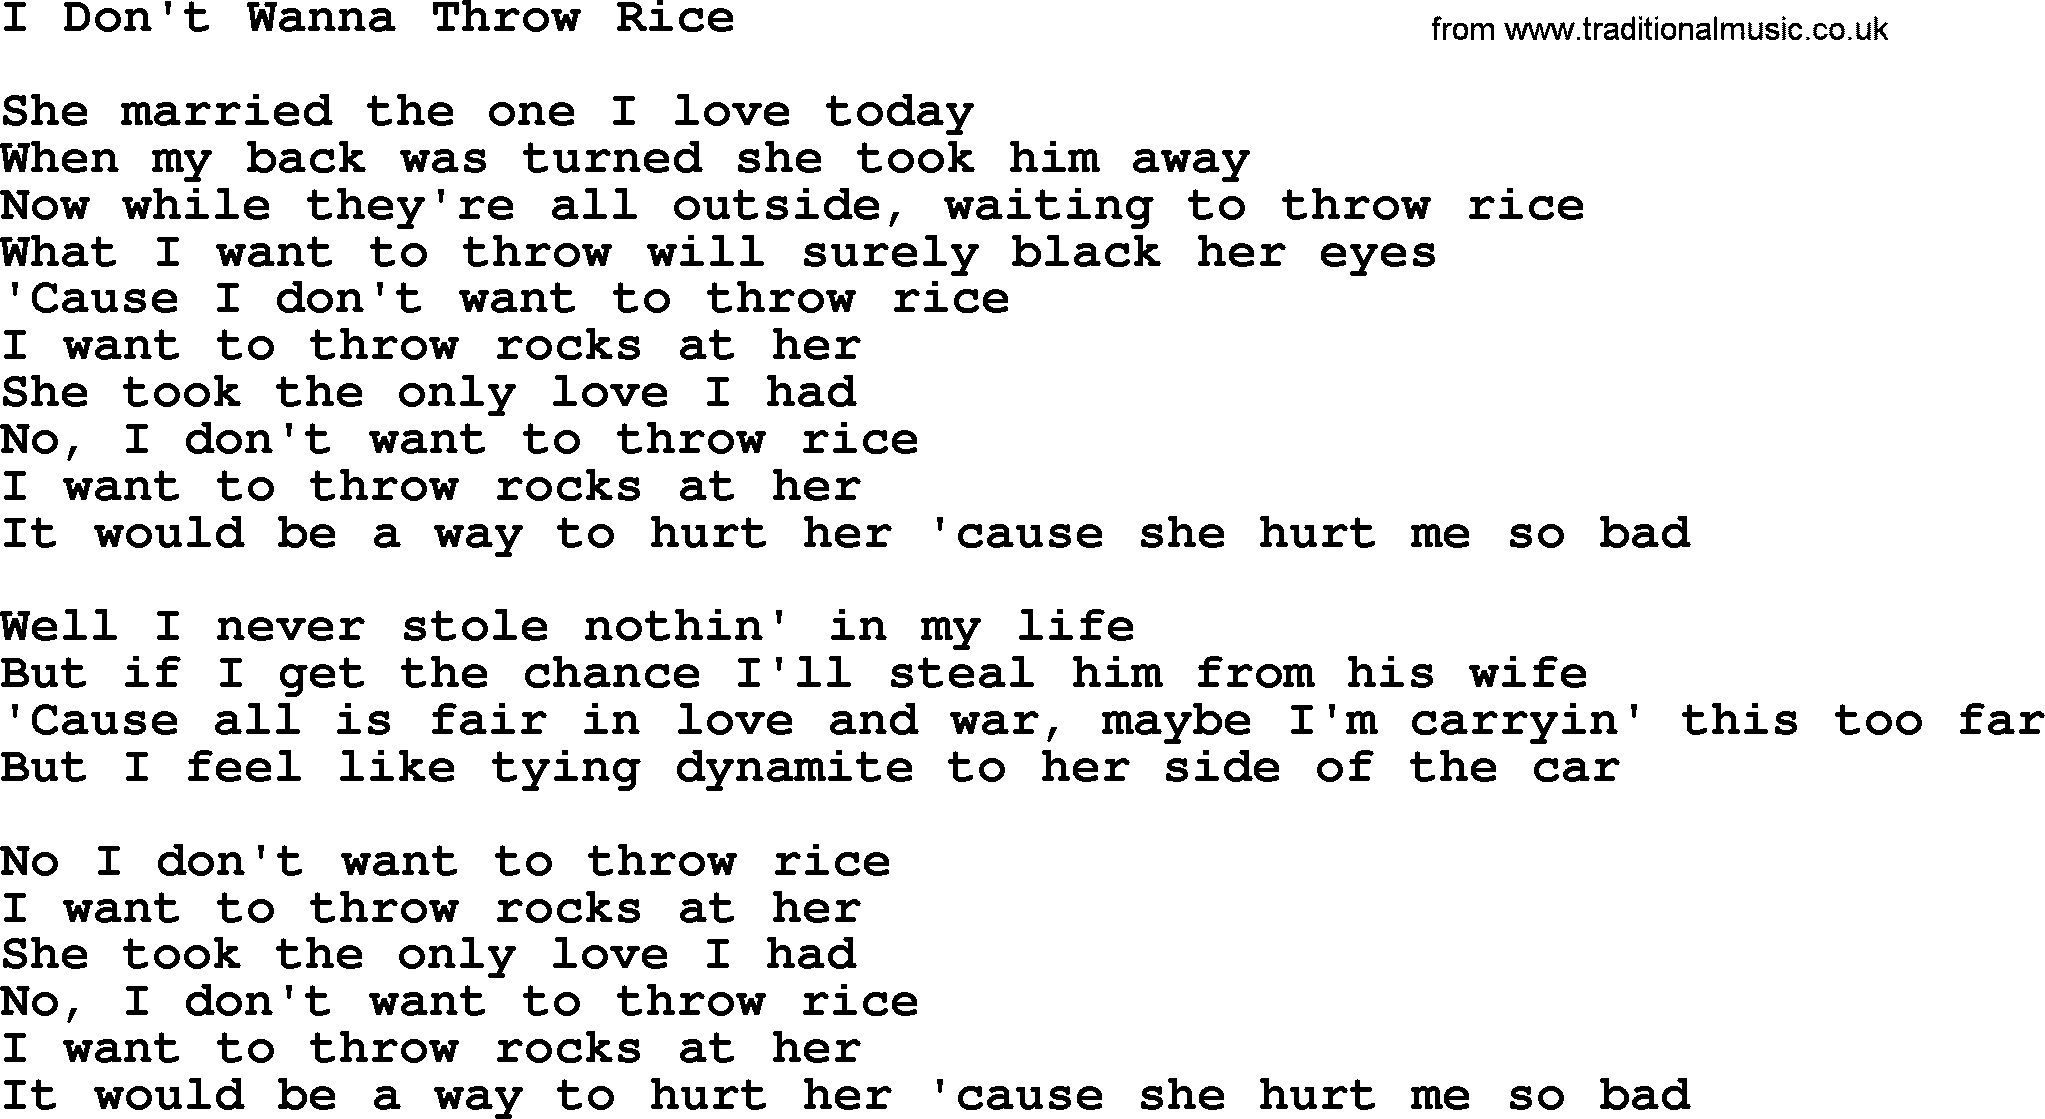 Dolly Parton song I Don't Wanna Throw Rice.txt lyrics